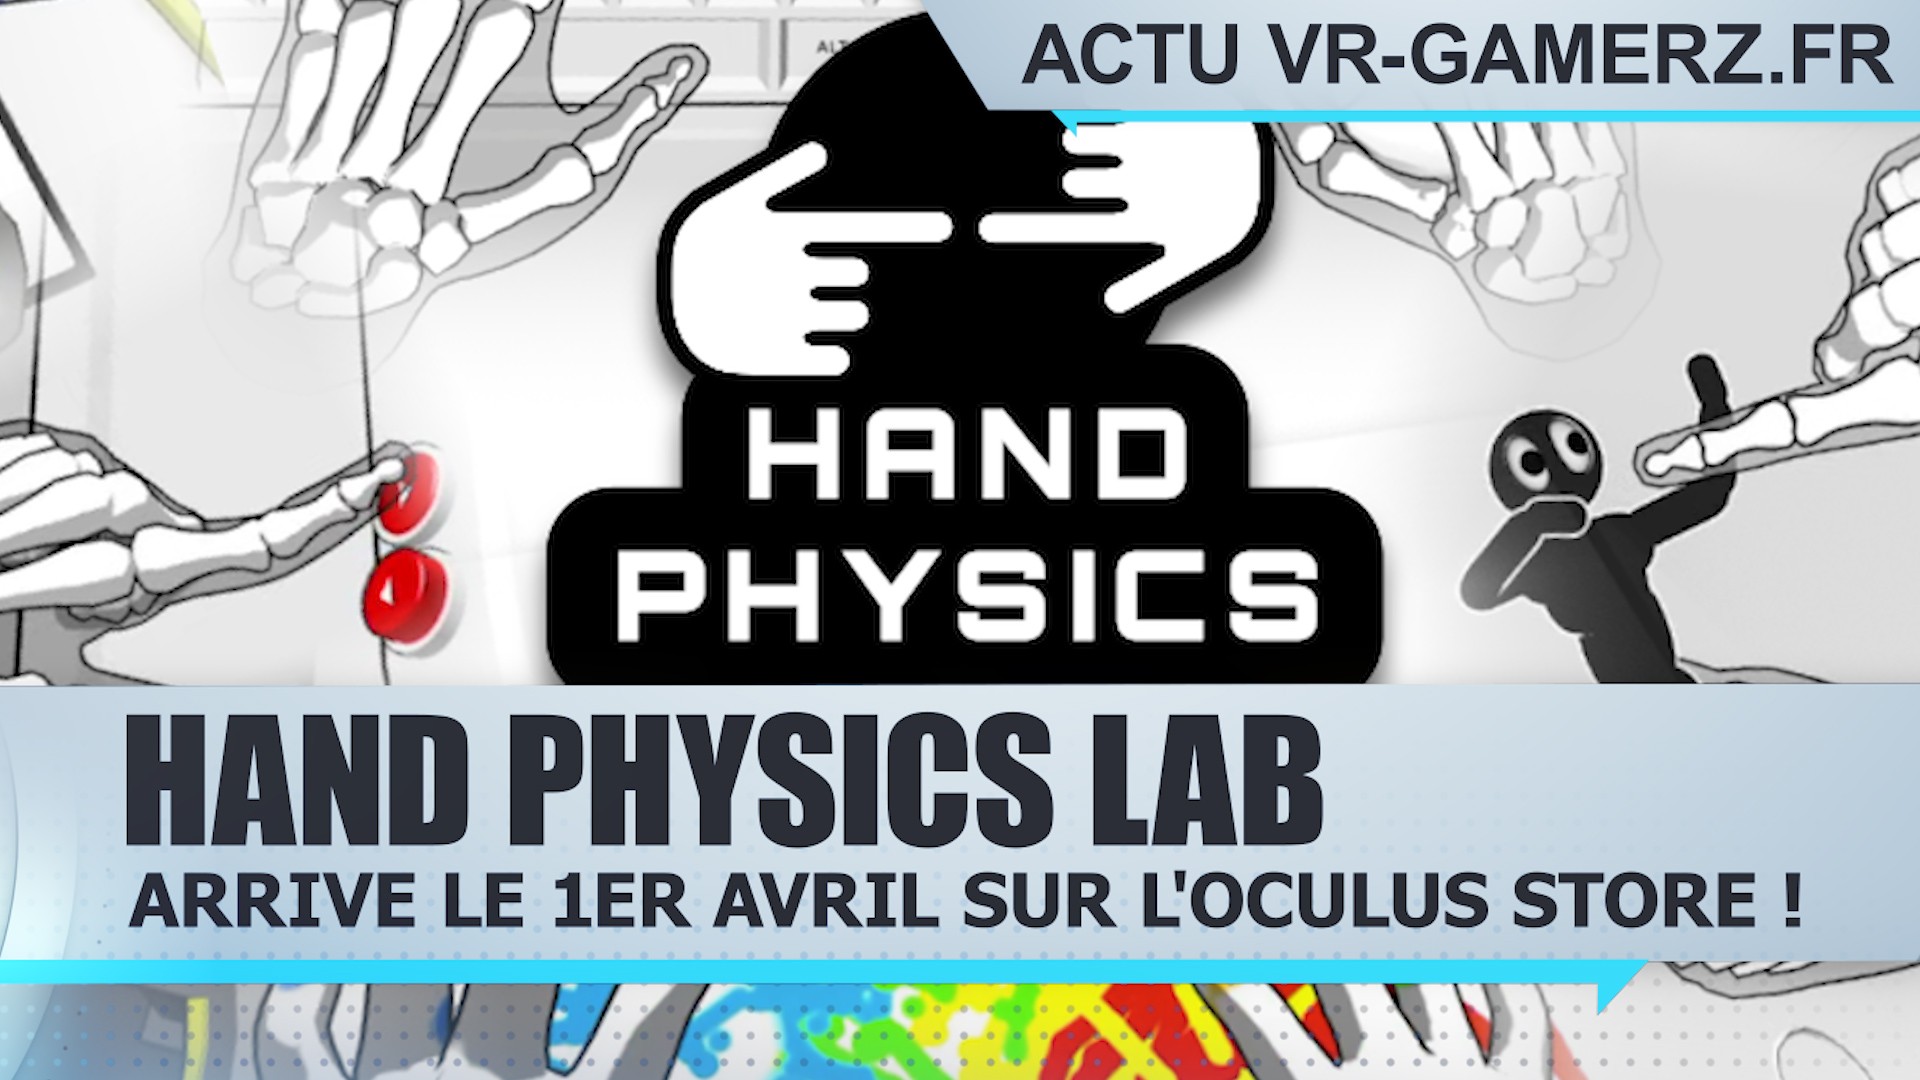 Hand Physics Lab arrive le 1er Avril sur l’Oculus store !